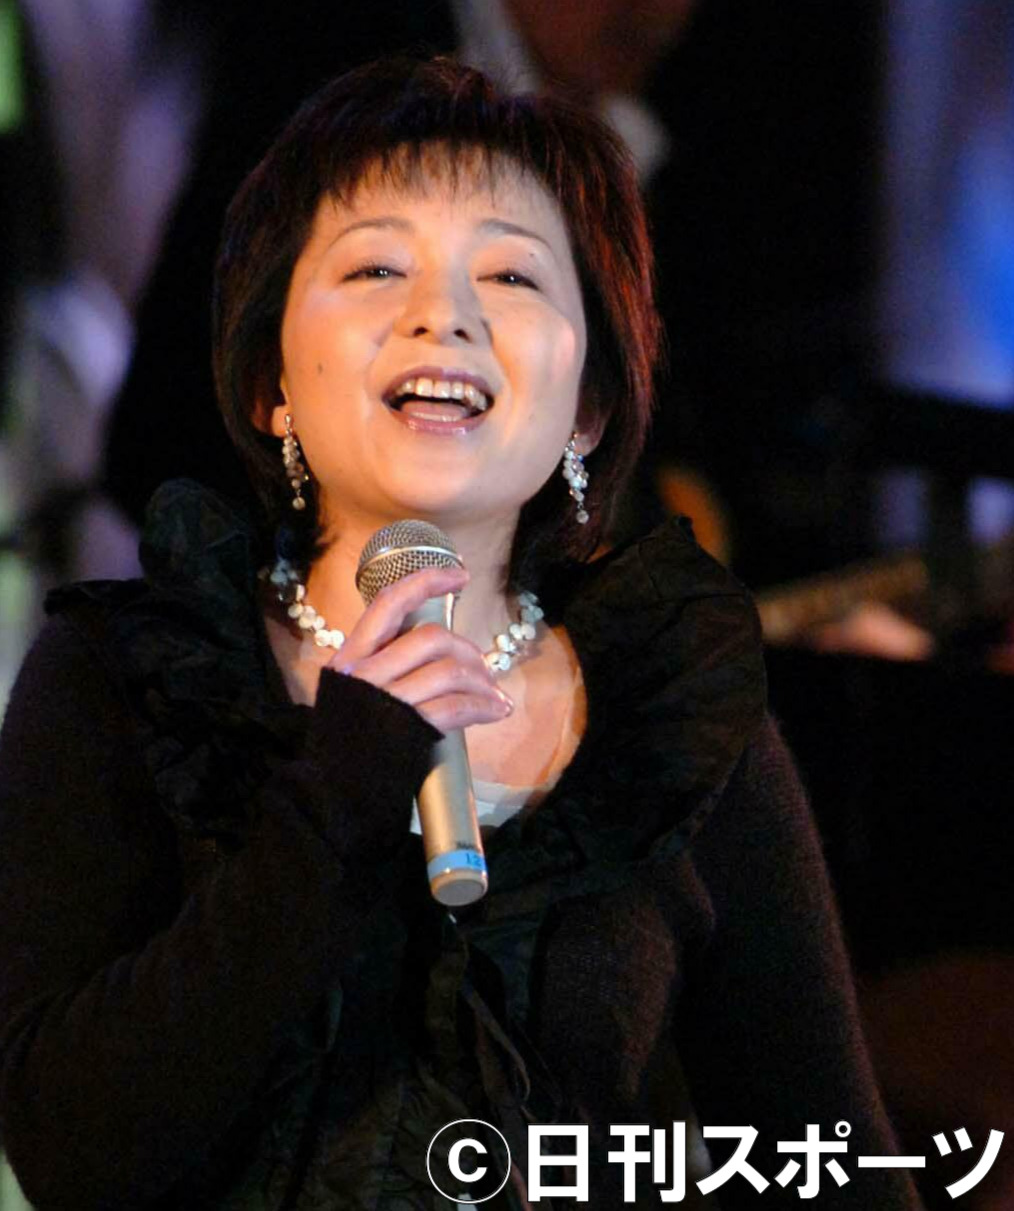 05年11月10日、渡辺プロ創立50周年パーティーで「木綿のハンカチーフ」を歌う太田裕美